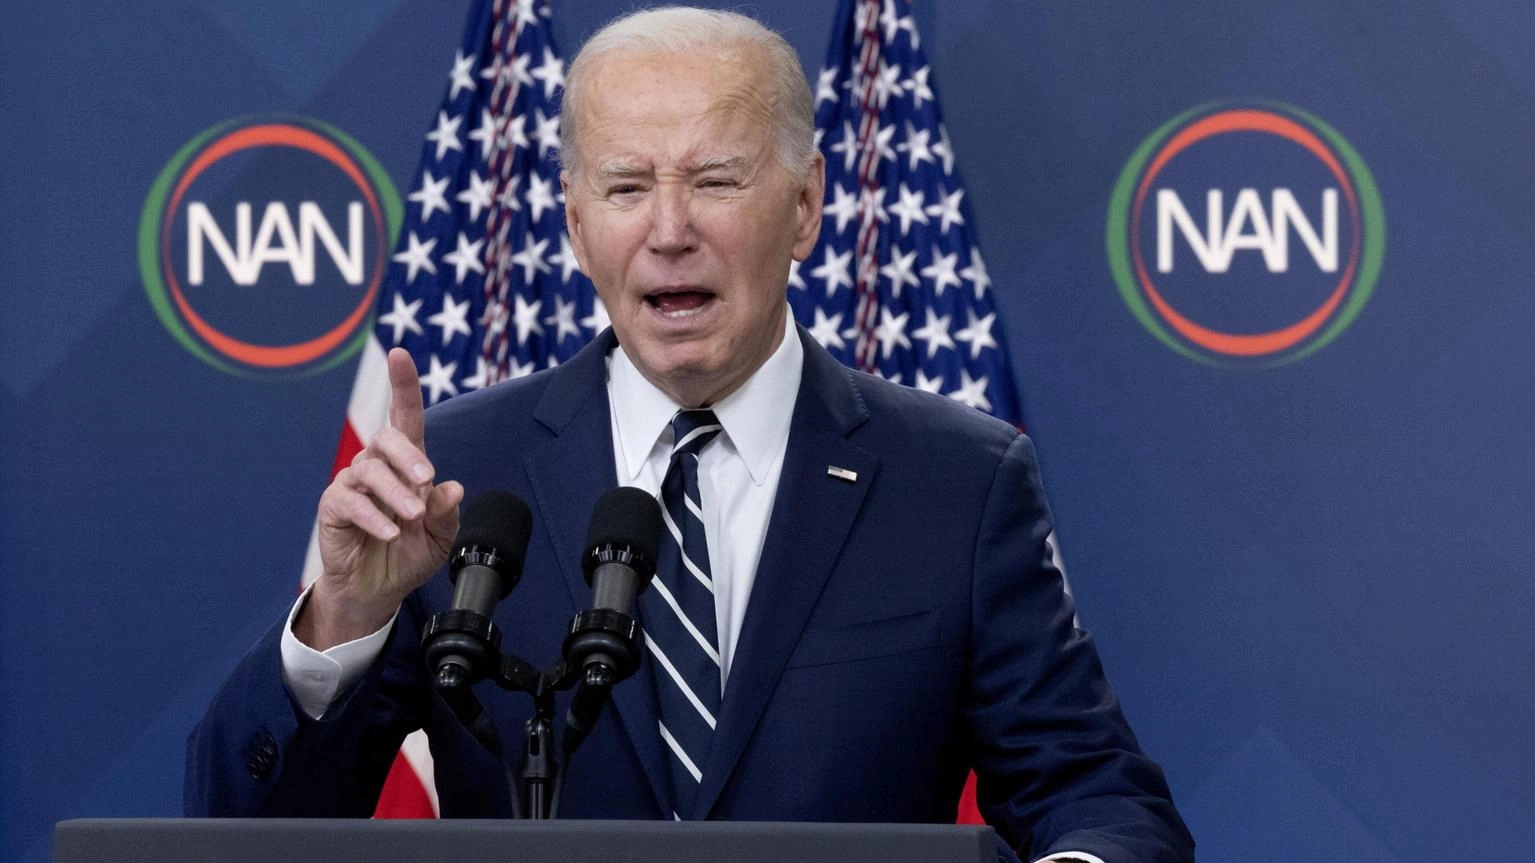 Biden, evitare l'escalation del conflitto in Medio Oriente